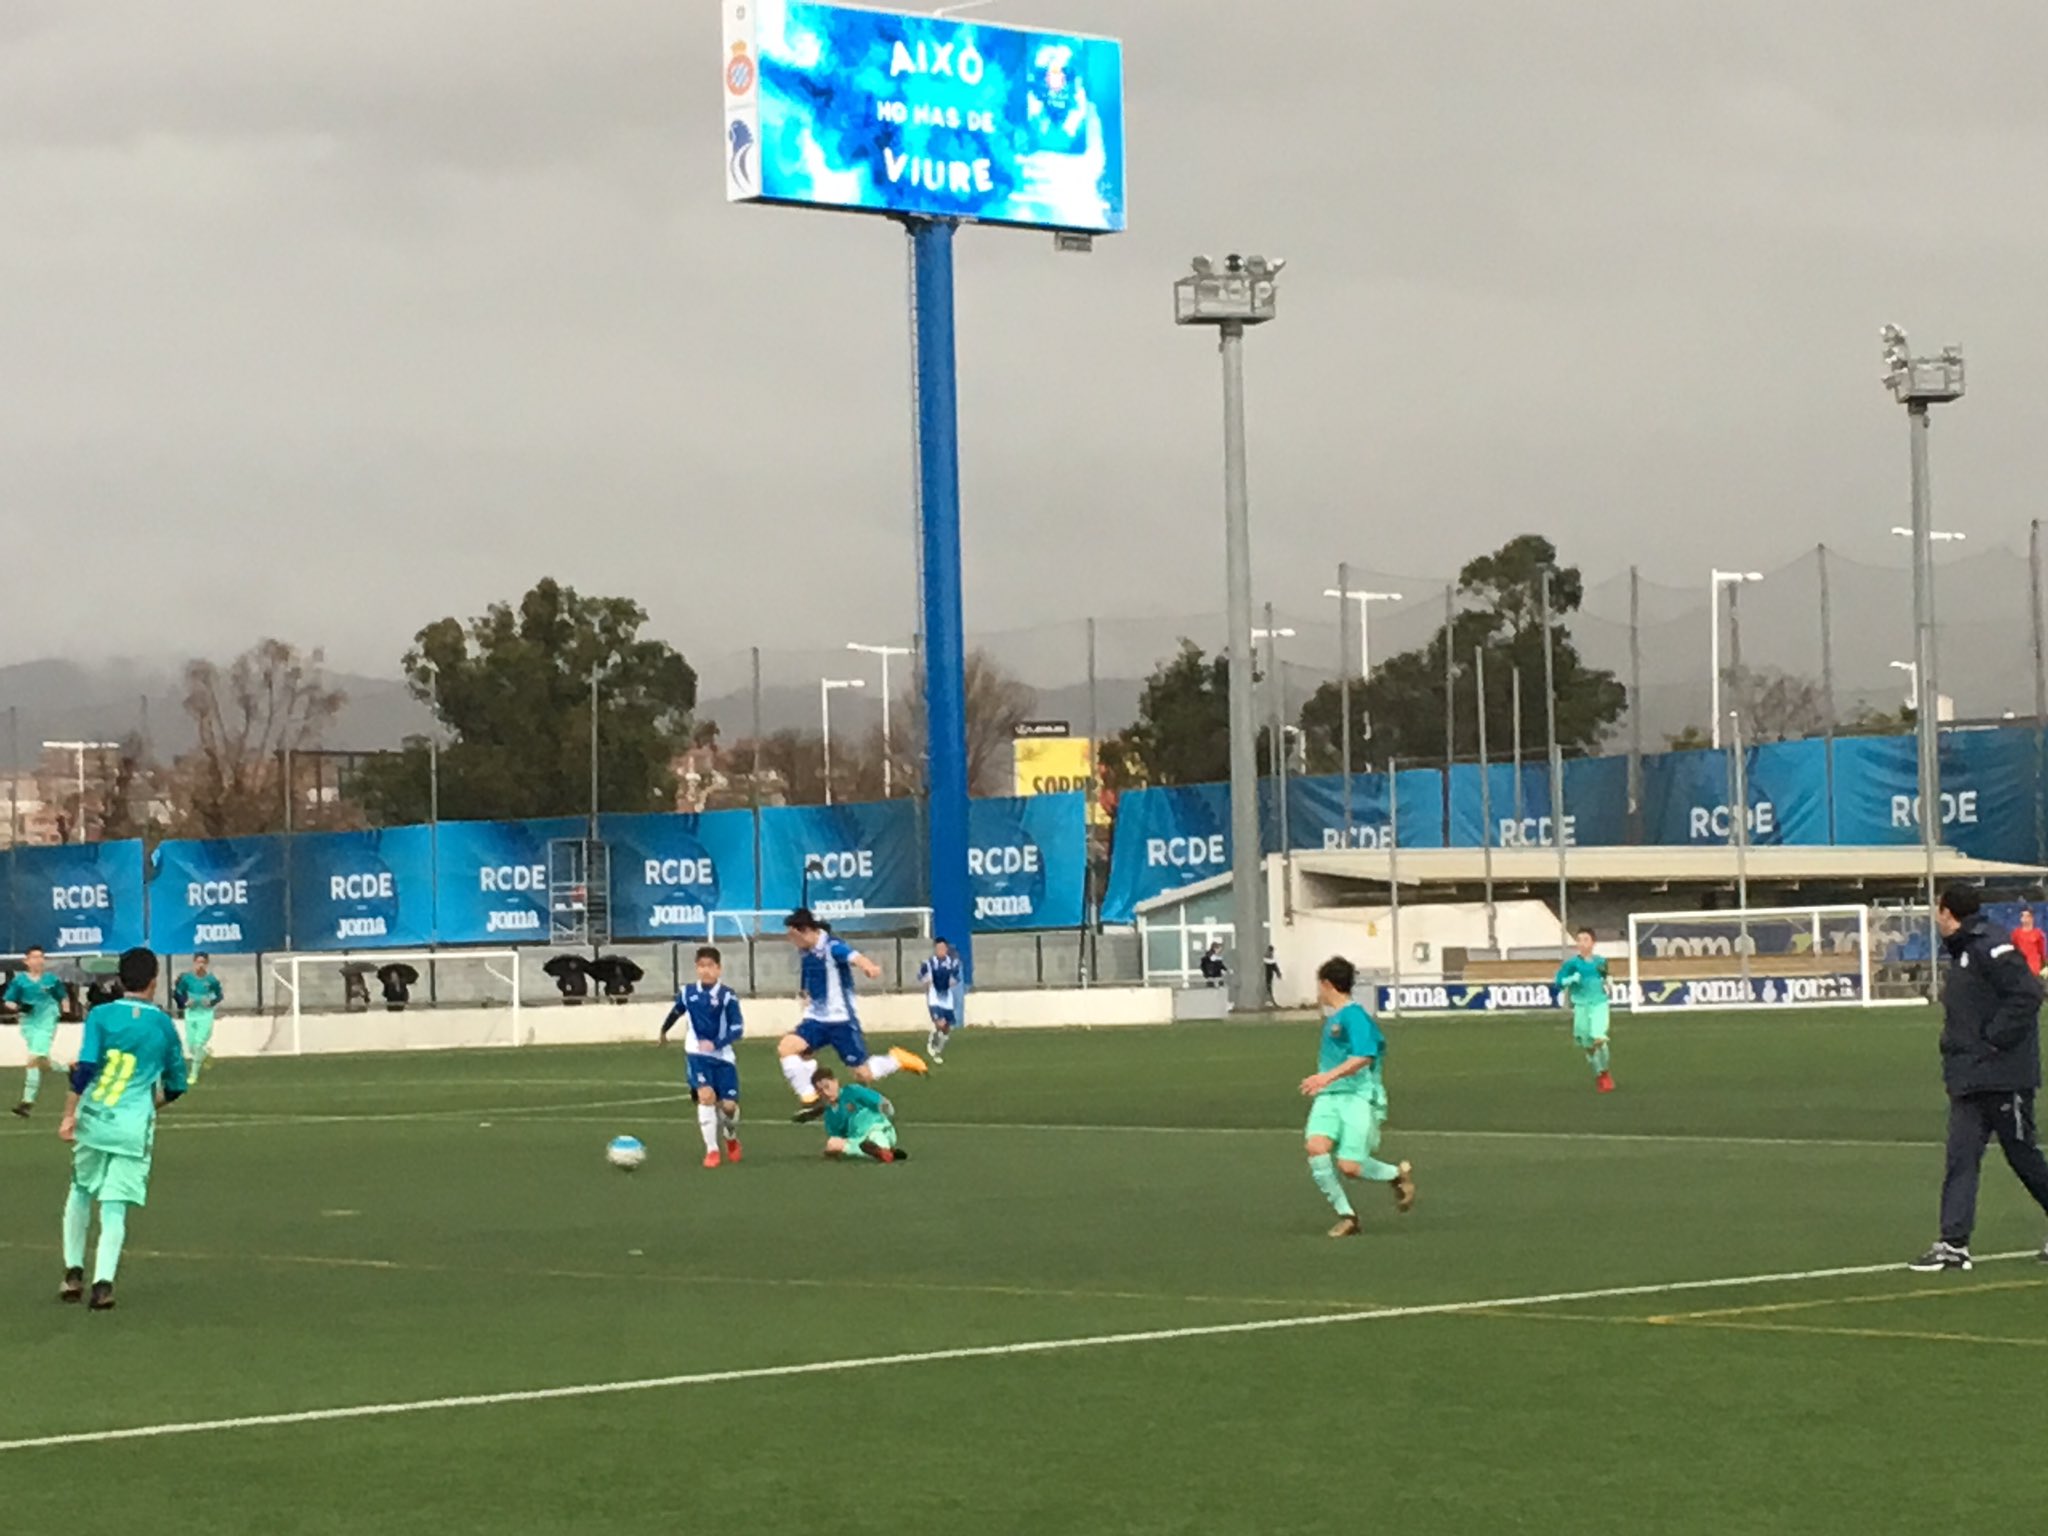 Albert Rogé en Twitter: "Domingo. 10 de mañana. Ciudad Deportiva Dani Jarque. Lluvia, mucha lluvia. aquí estamos viendo el derbi de infantiles entre Barça y Espanyol. La magia del fútbol